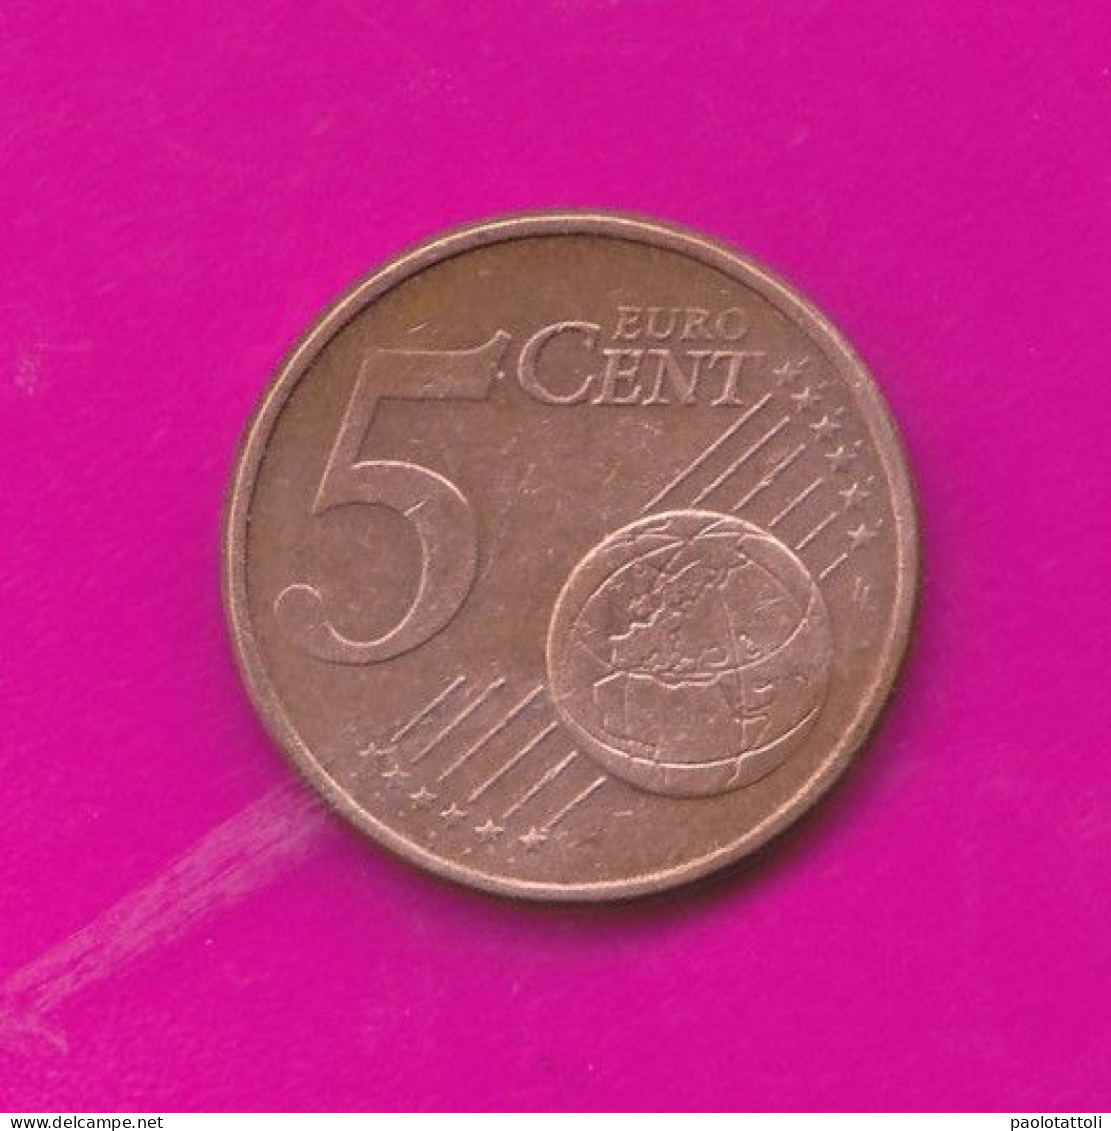 Germany, D 2011- 5 Euro Cent- Nickel Brass- Obverse Oak Leaf. Reverse Denomination- BB, VF, TTB, SS- - Deutschland